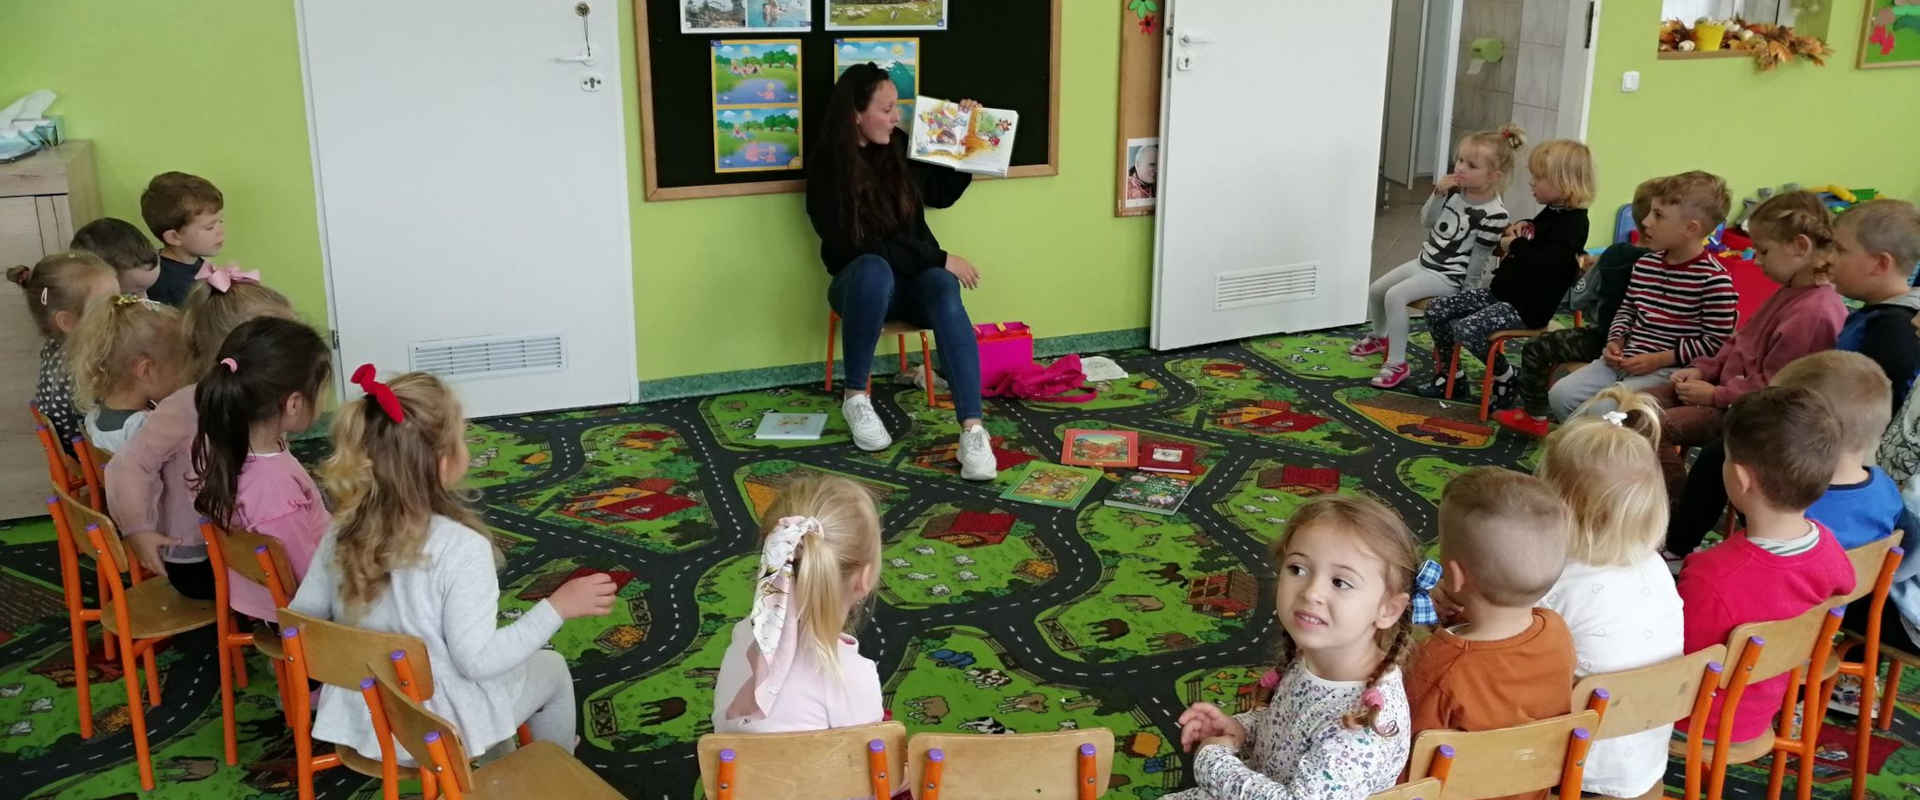 Dzieci podczas czytanie bajek przez opiekunkę